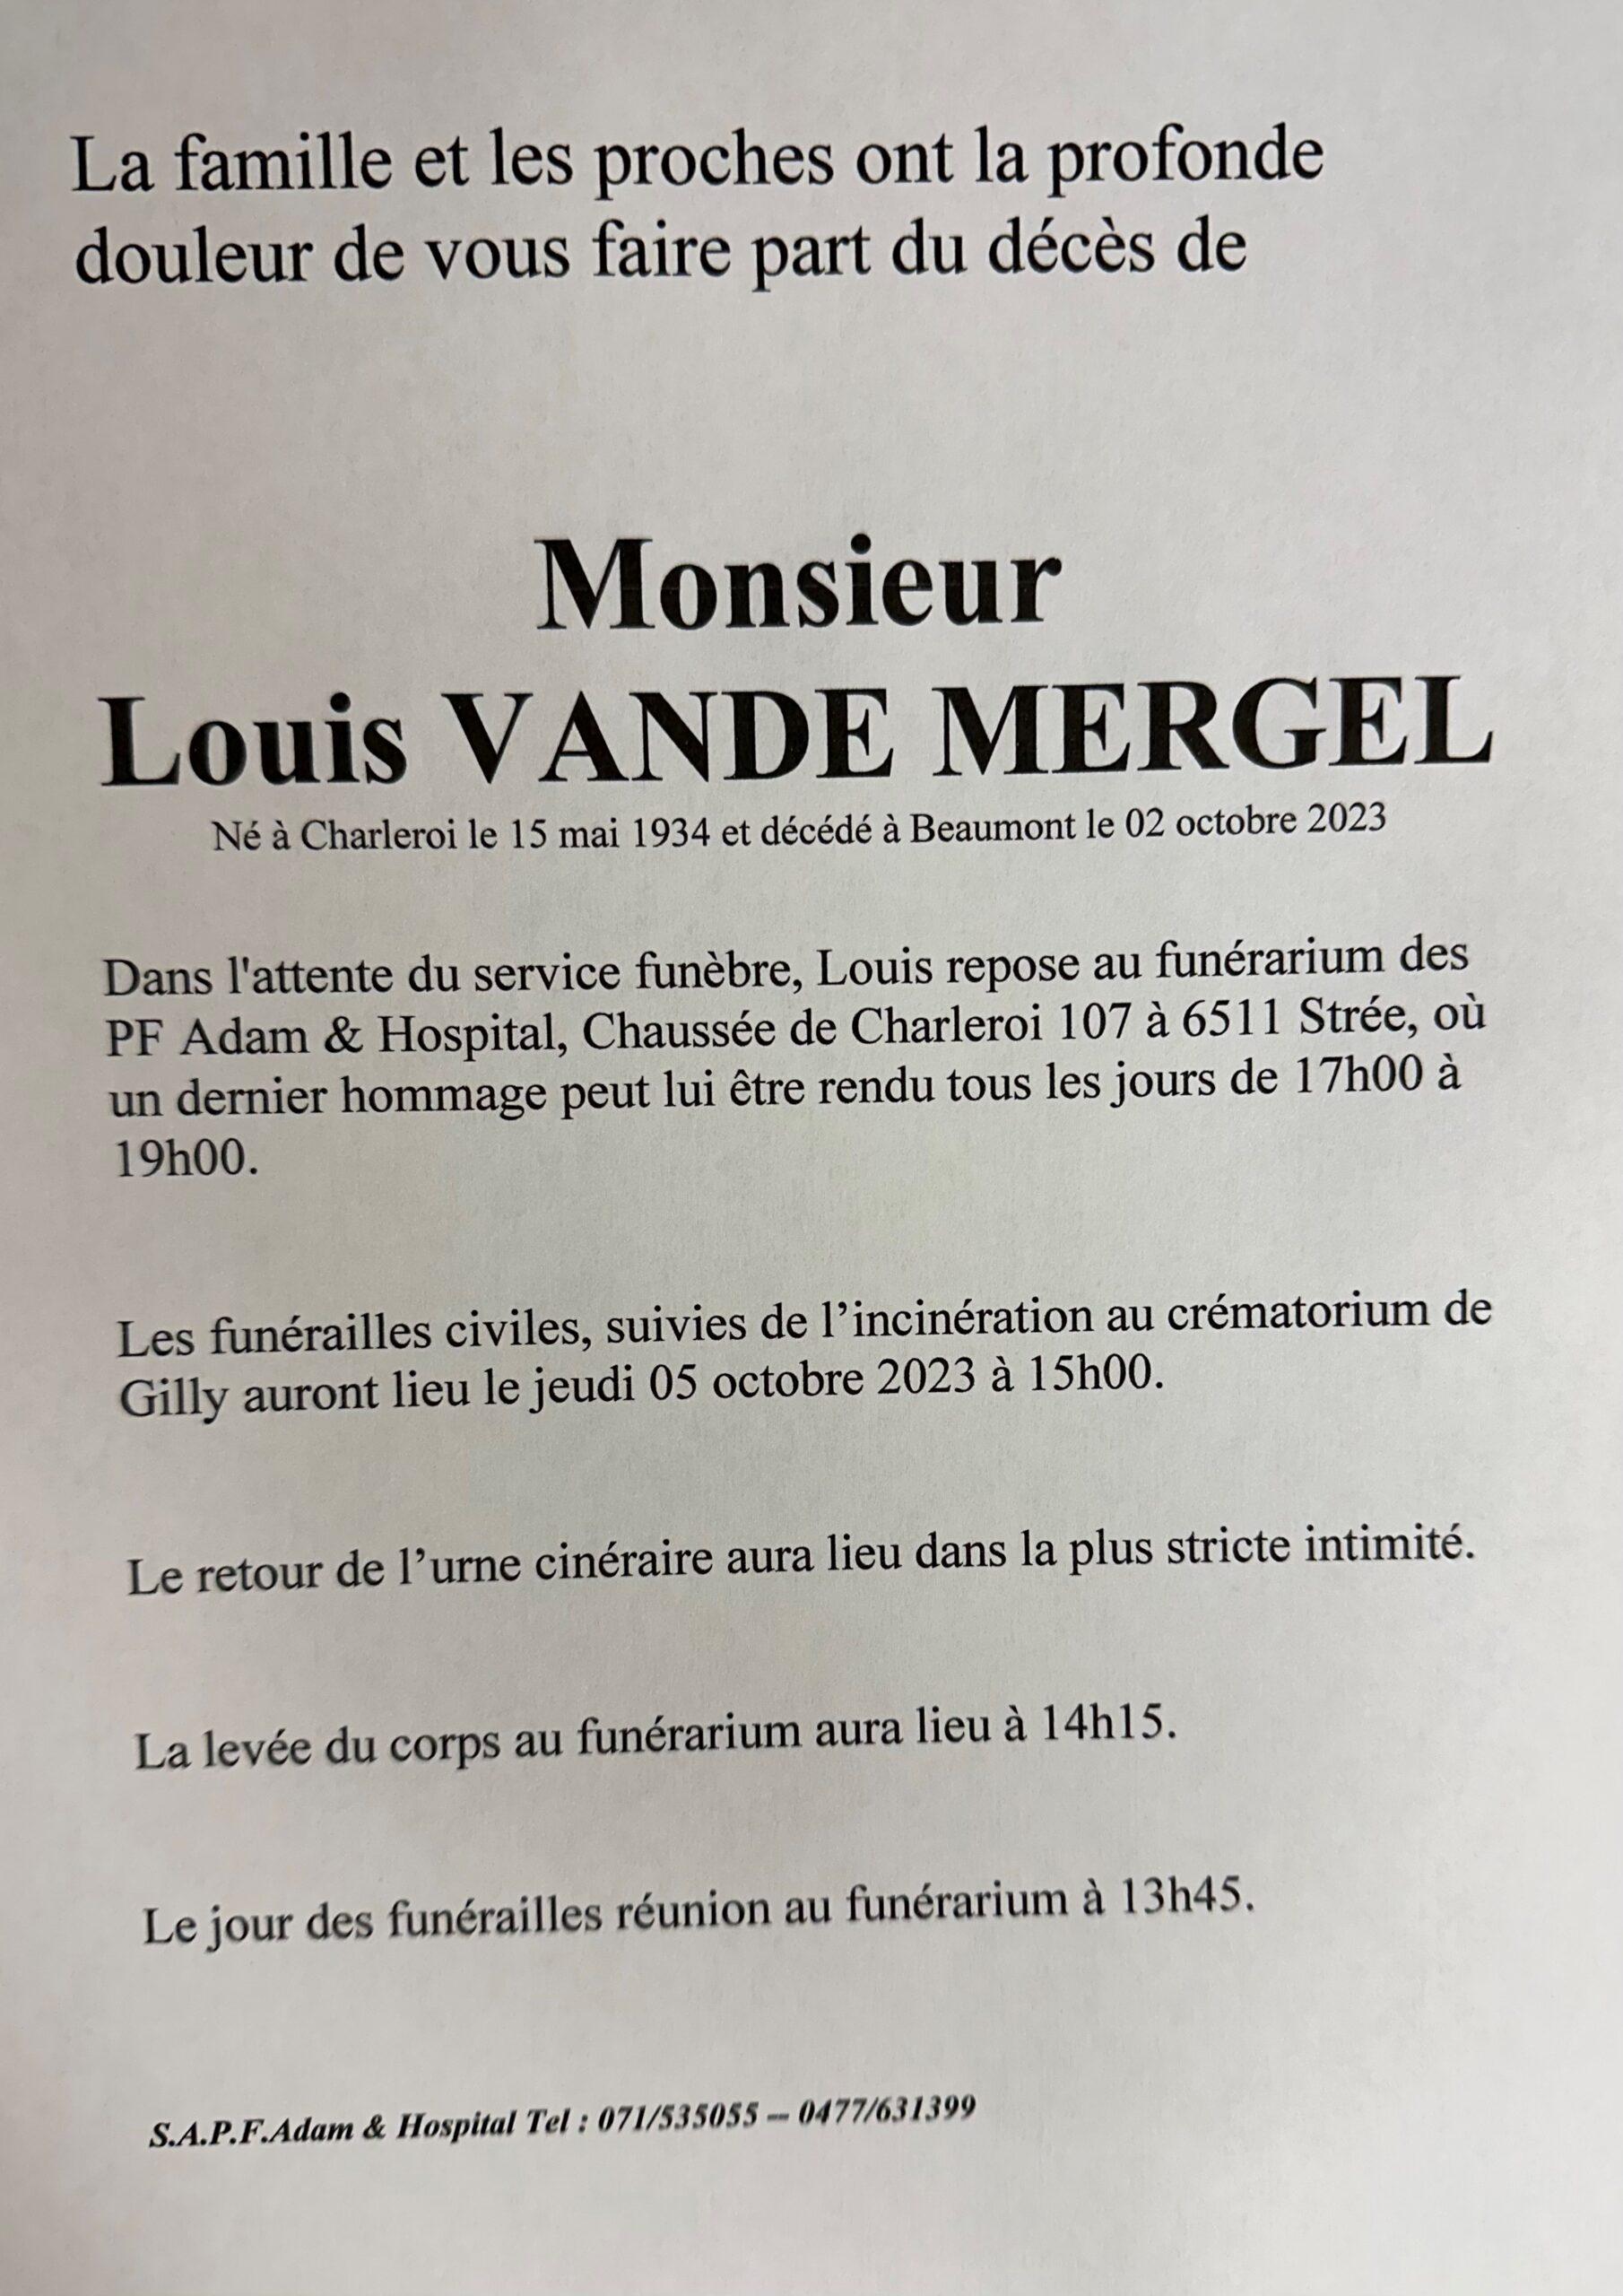 Louis VANDE MERGEL scaled | Funérailles Adam Hospital